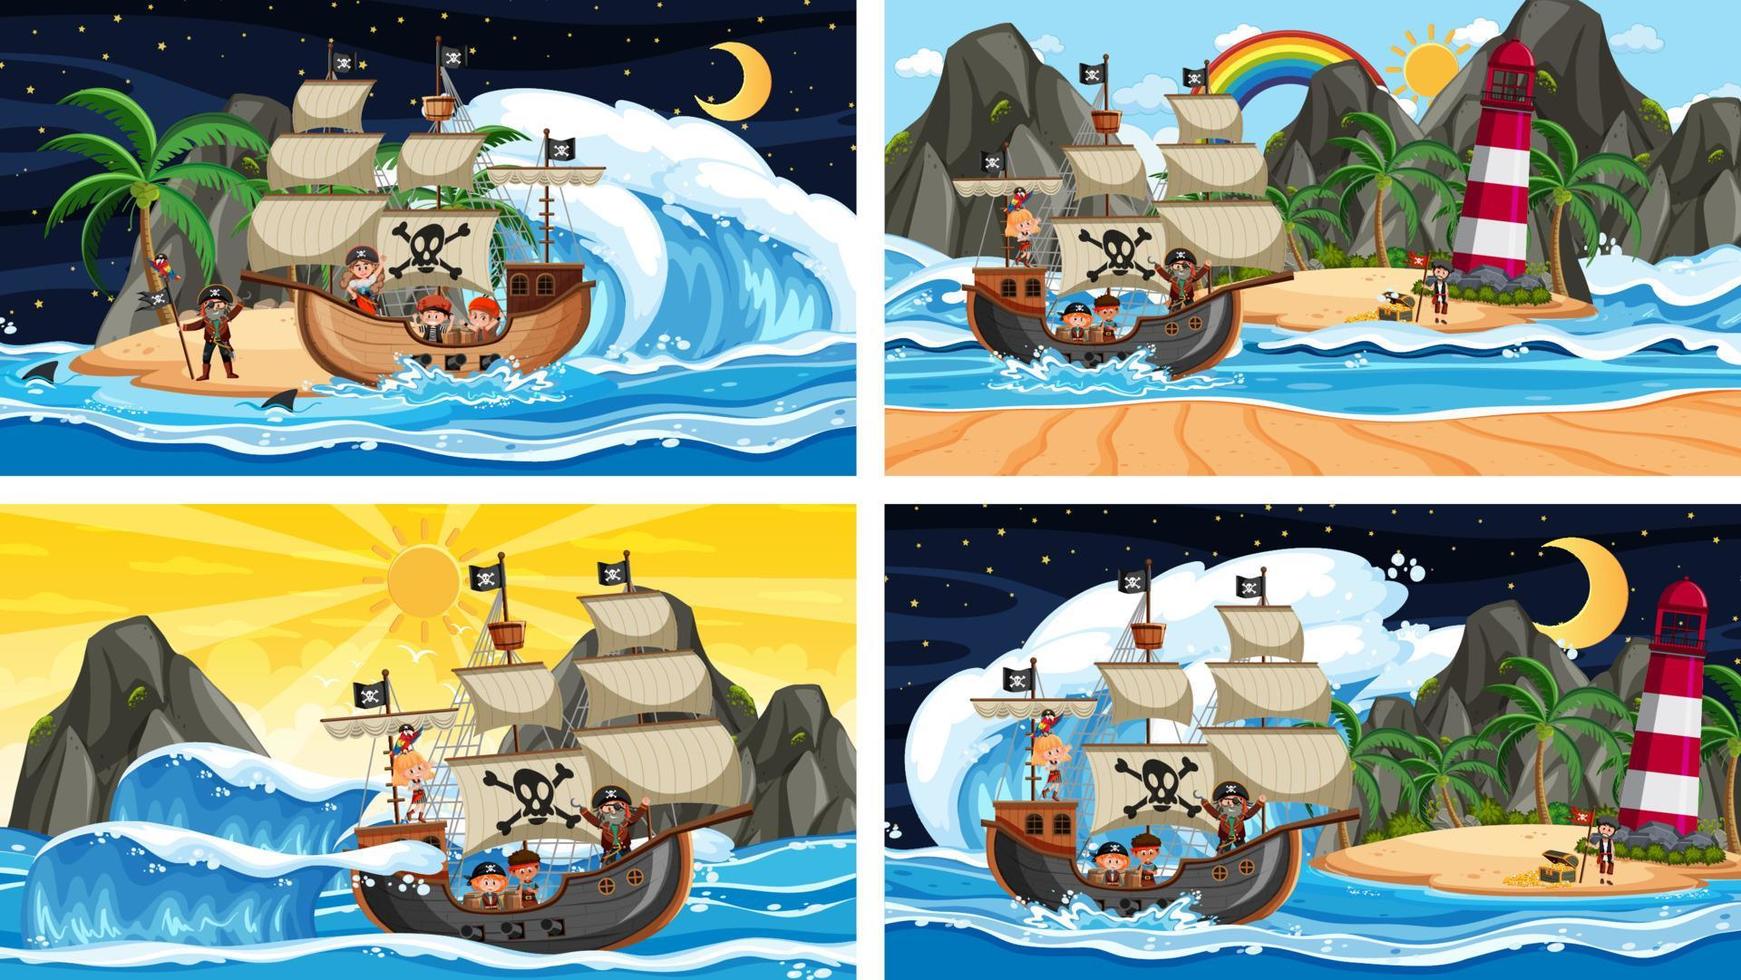 ensemble de différentes scènes de plage avec bateau pirate et personnage de dessin animé pirate vecteur